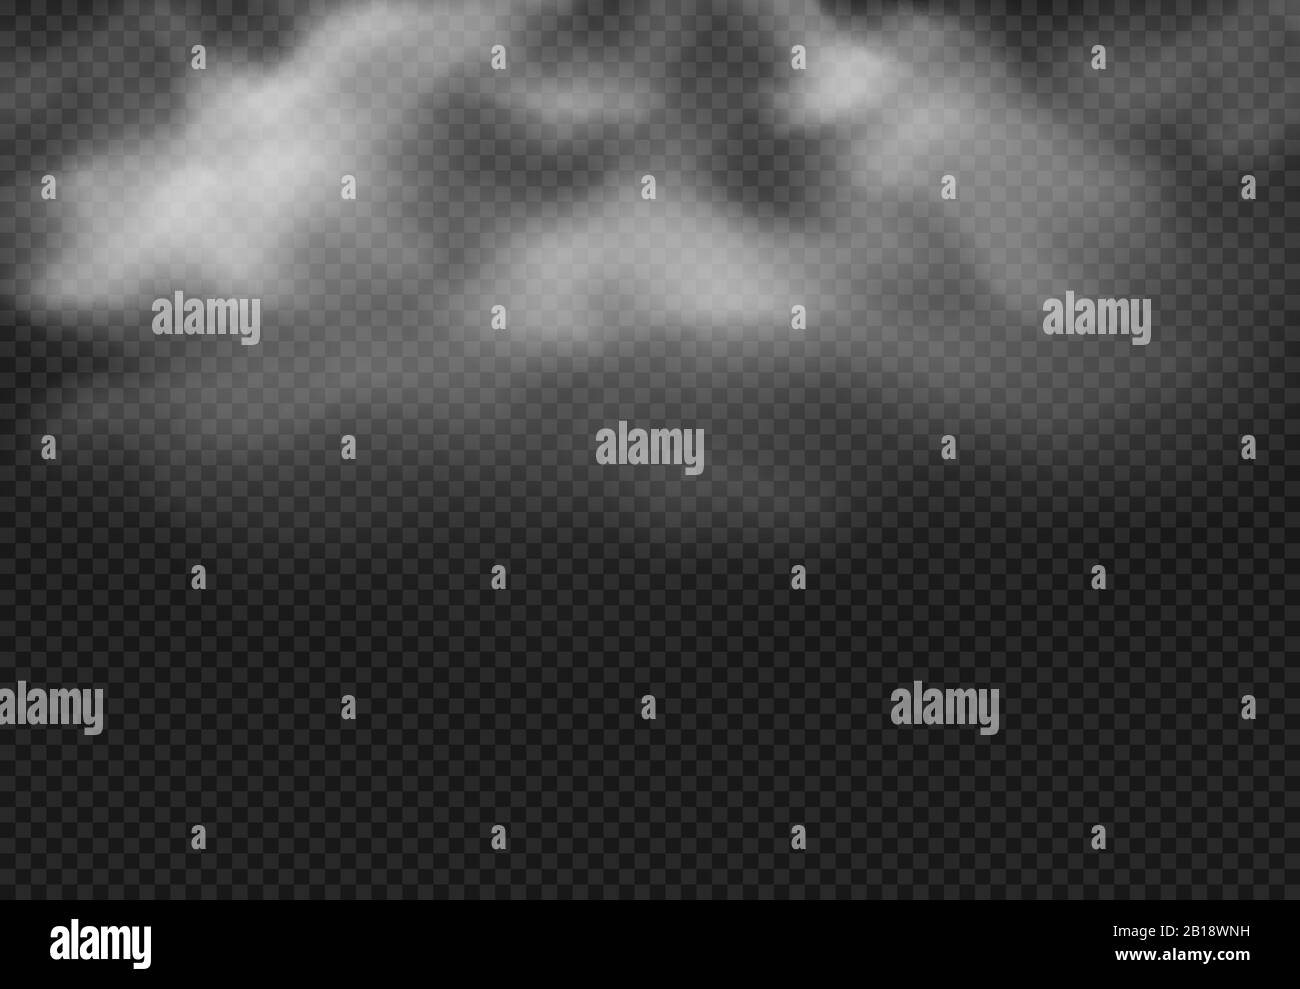 Nuage de fumée. Nuages de brouillard, brouillard fumé et effet nuageux réaliste illustration vectorielle isolée Illustration de Vecteur